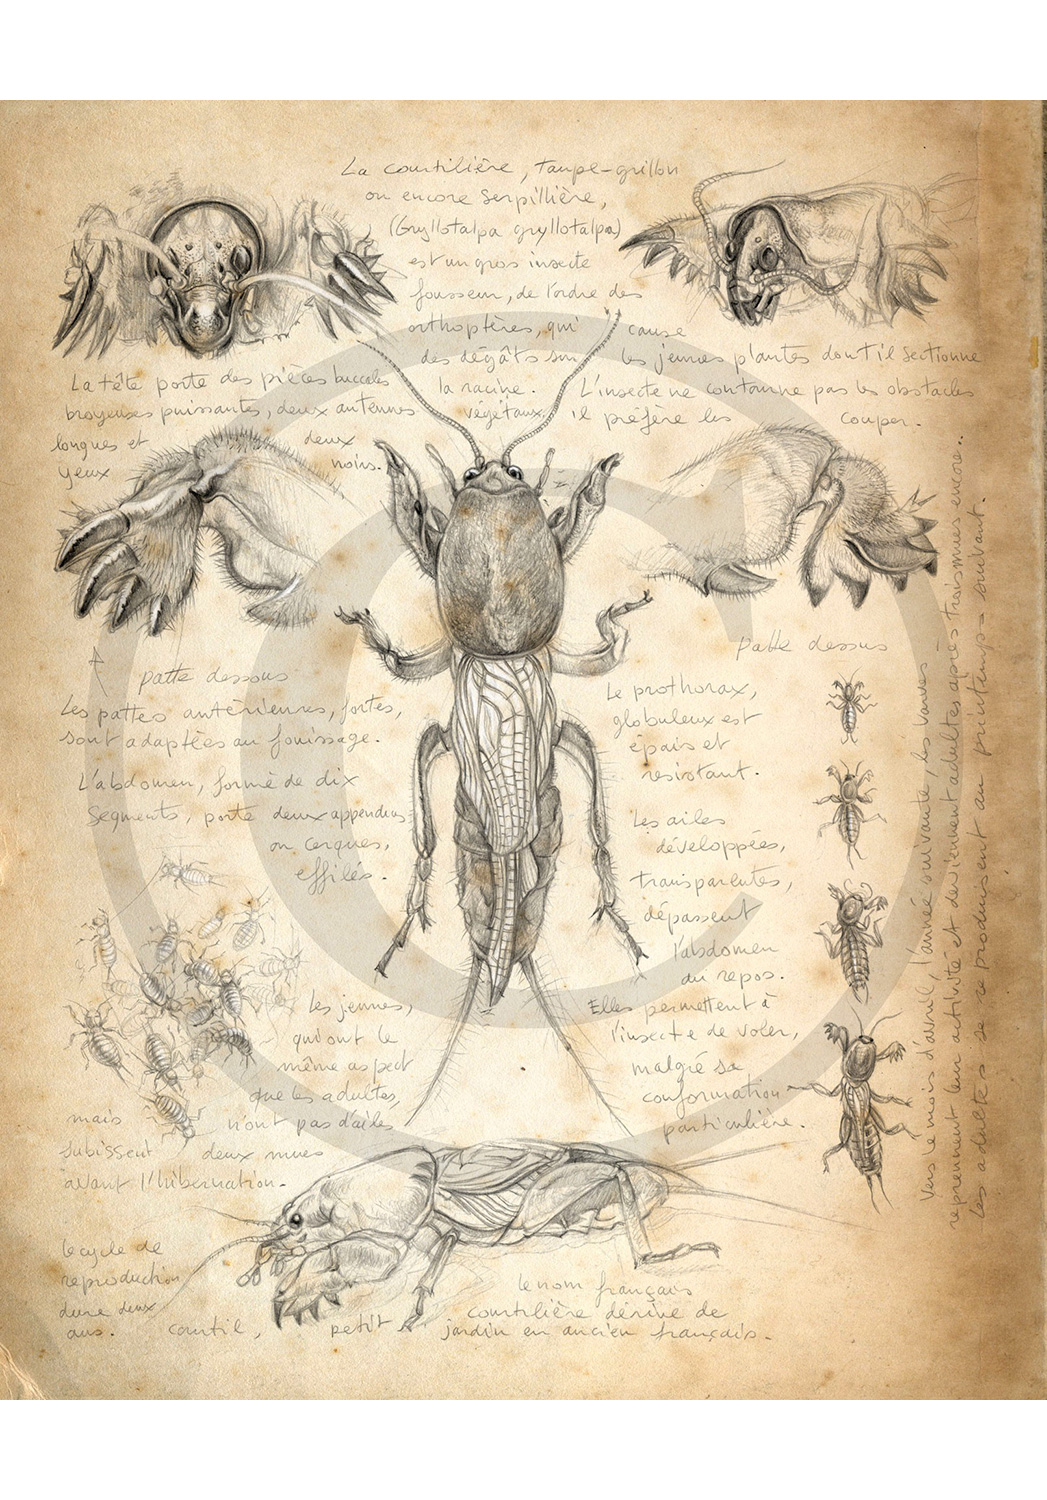 Marcello-art: Entomology 183 - Mole cricket